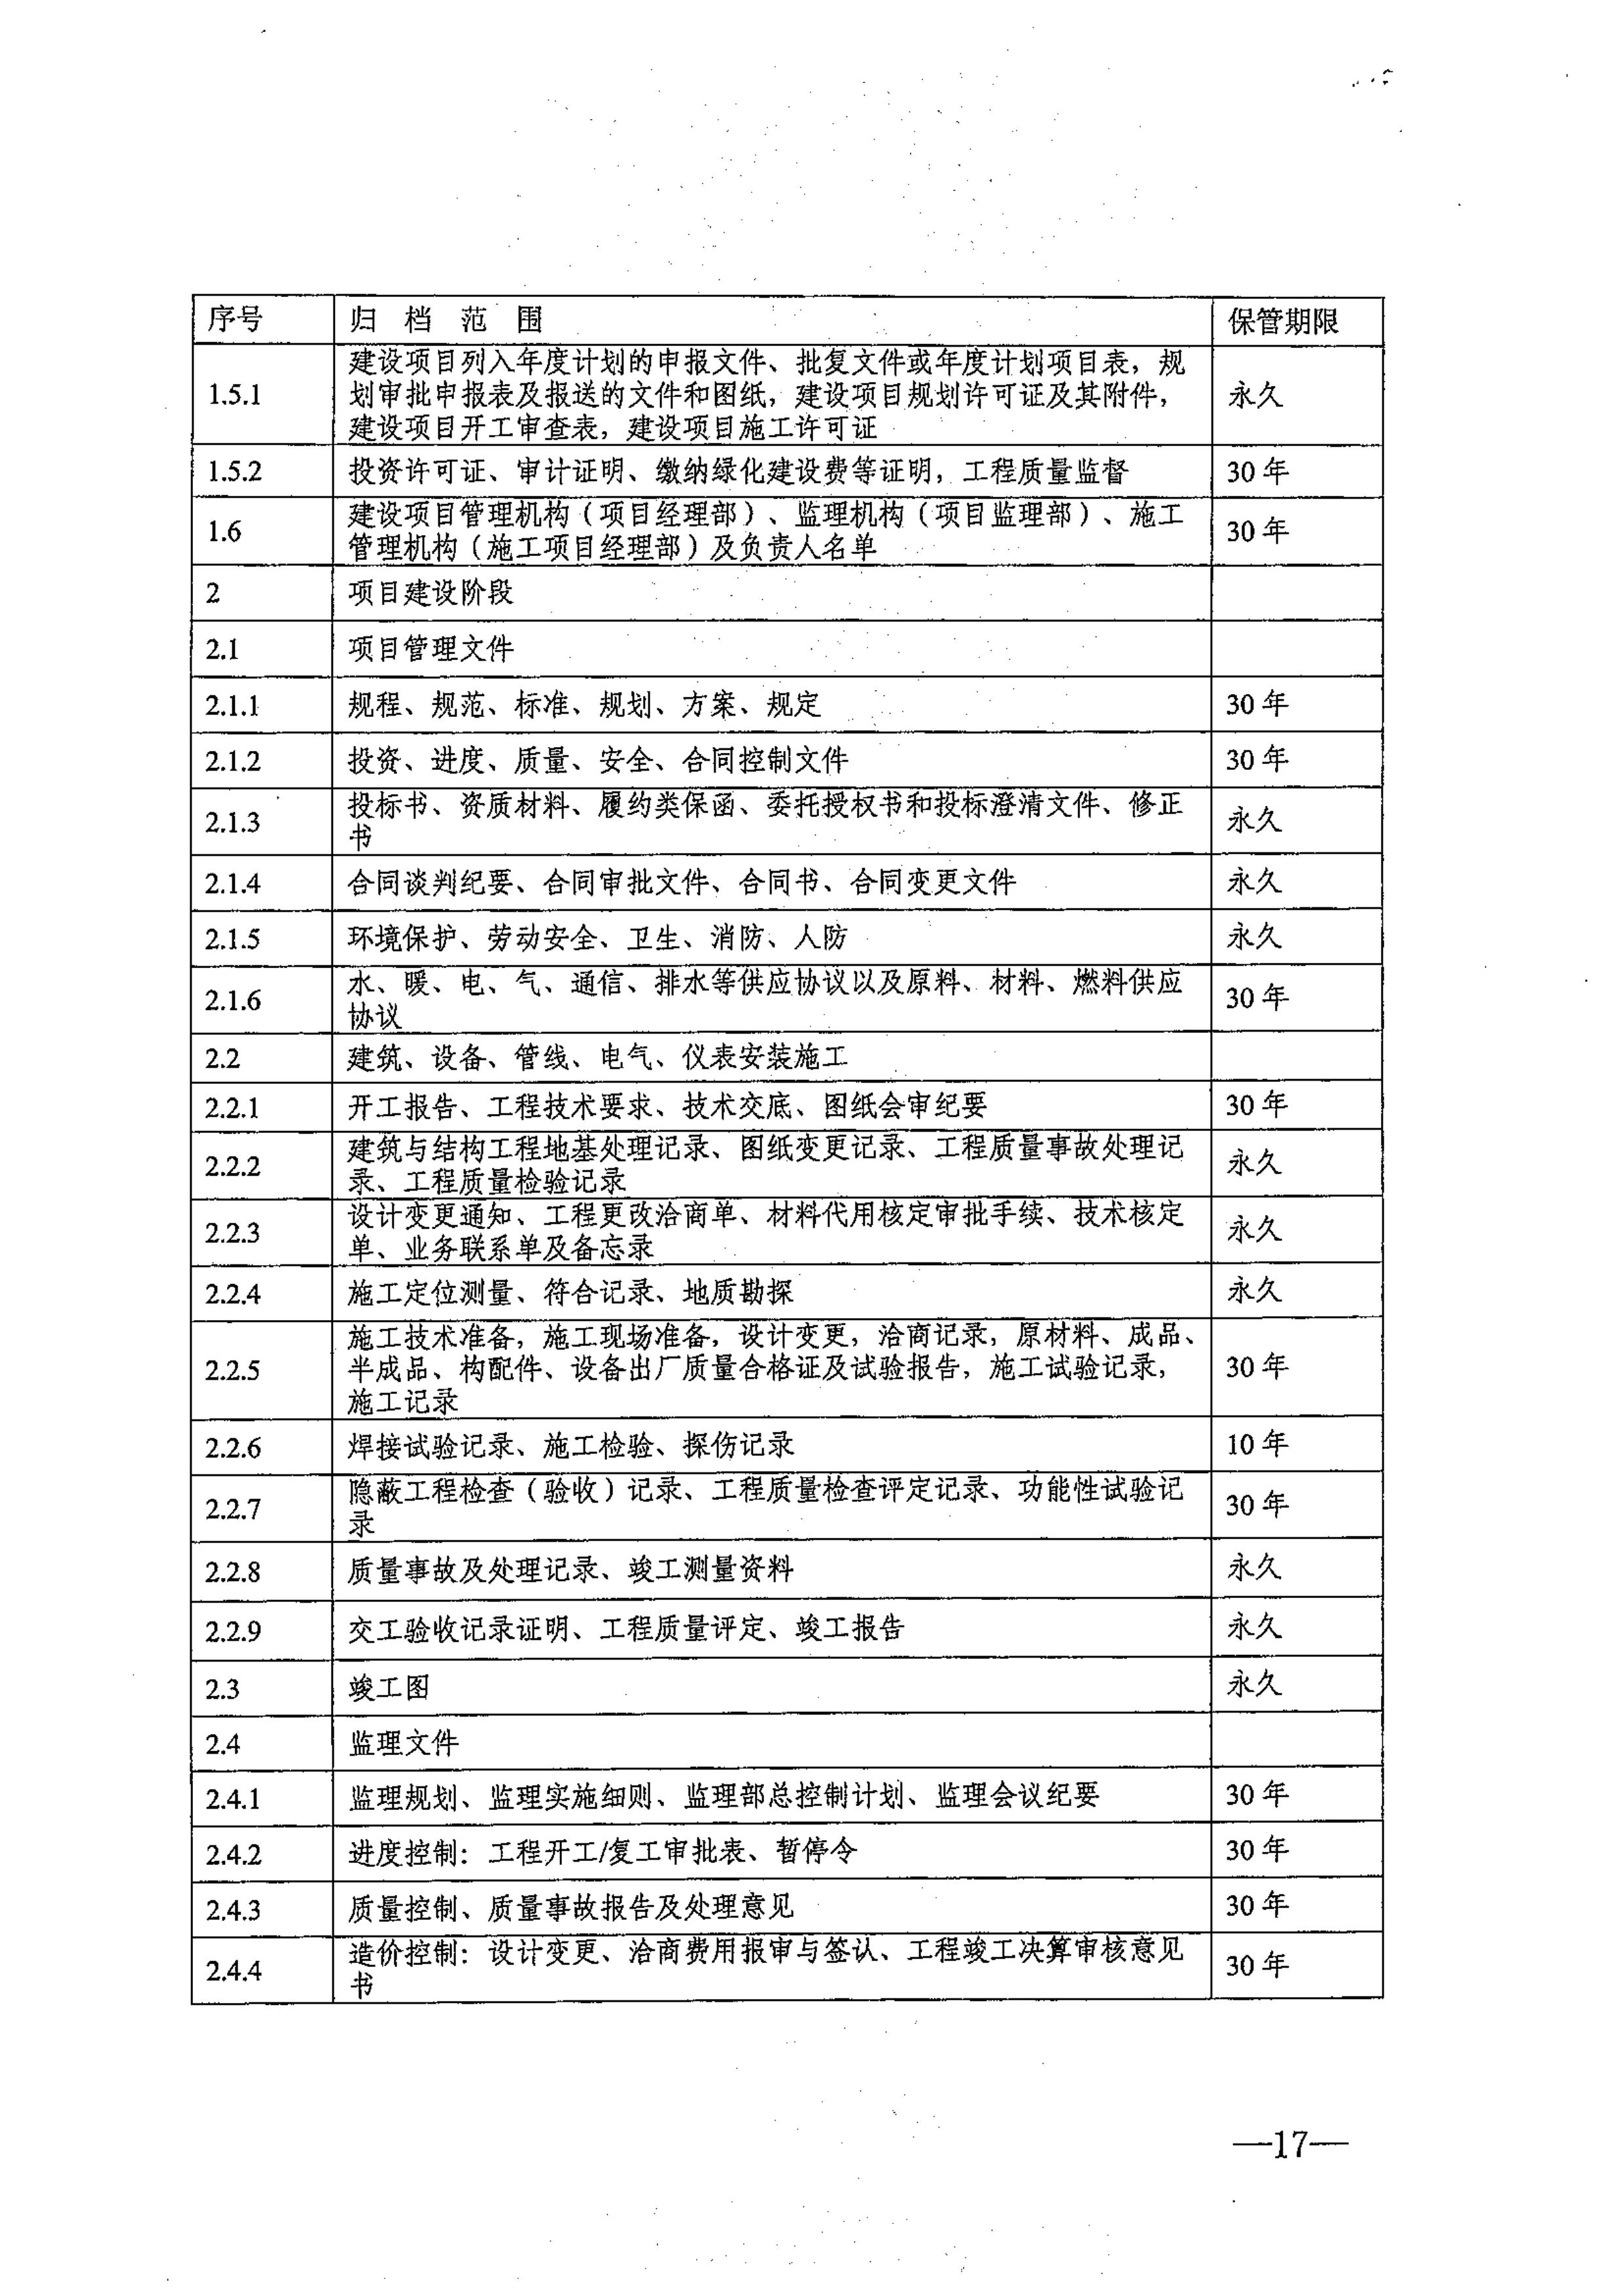 省教育厅、省档案局关于印发《江苏省中小学校档案管理暂行办法》的通知-图片-0017